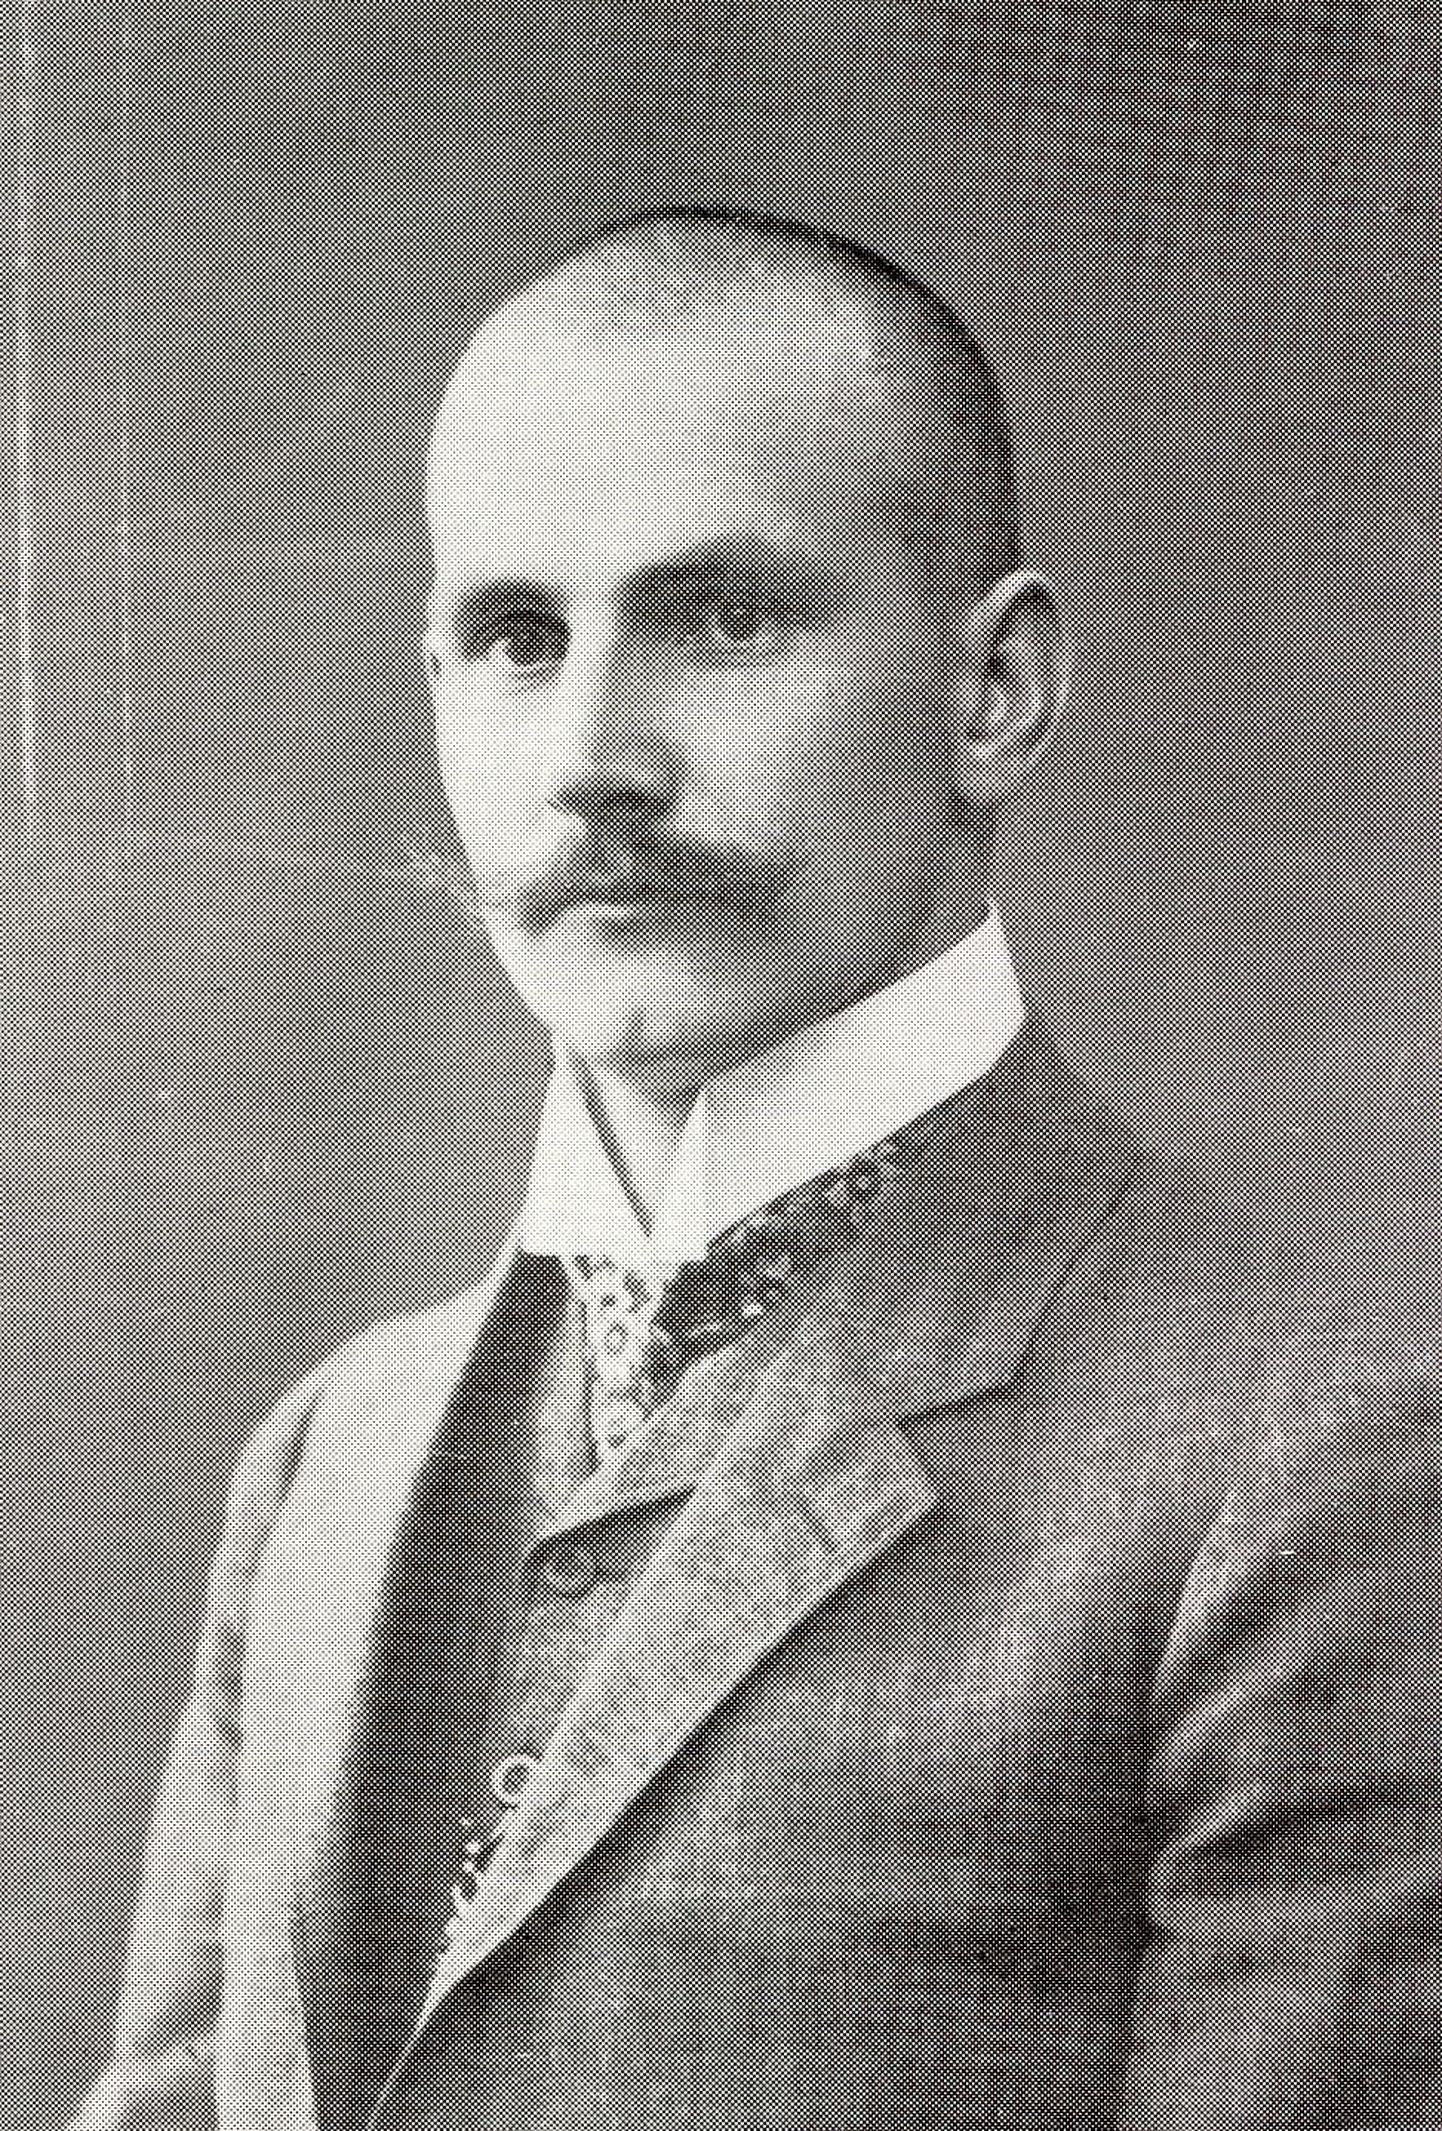 Eesti on ühtluskooli põhimõtte järgimisel olnud edukas juba vähemalt sajandi jagu. Pildil on Peeter Põld (1878-1930), üks olulisemaid vundamendi ladujaid.